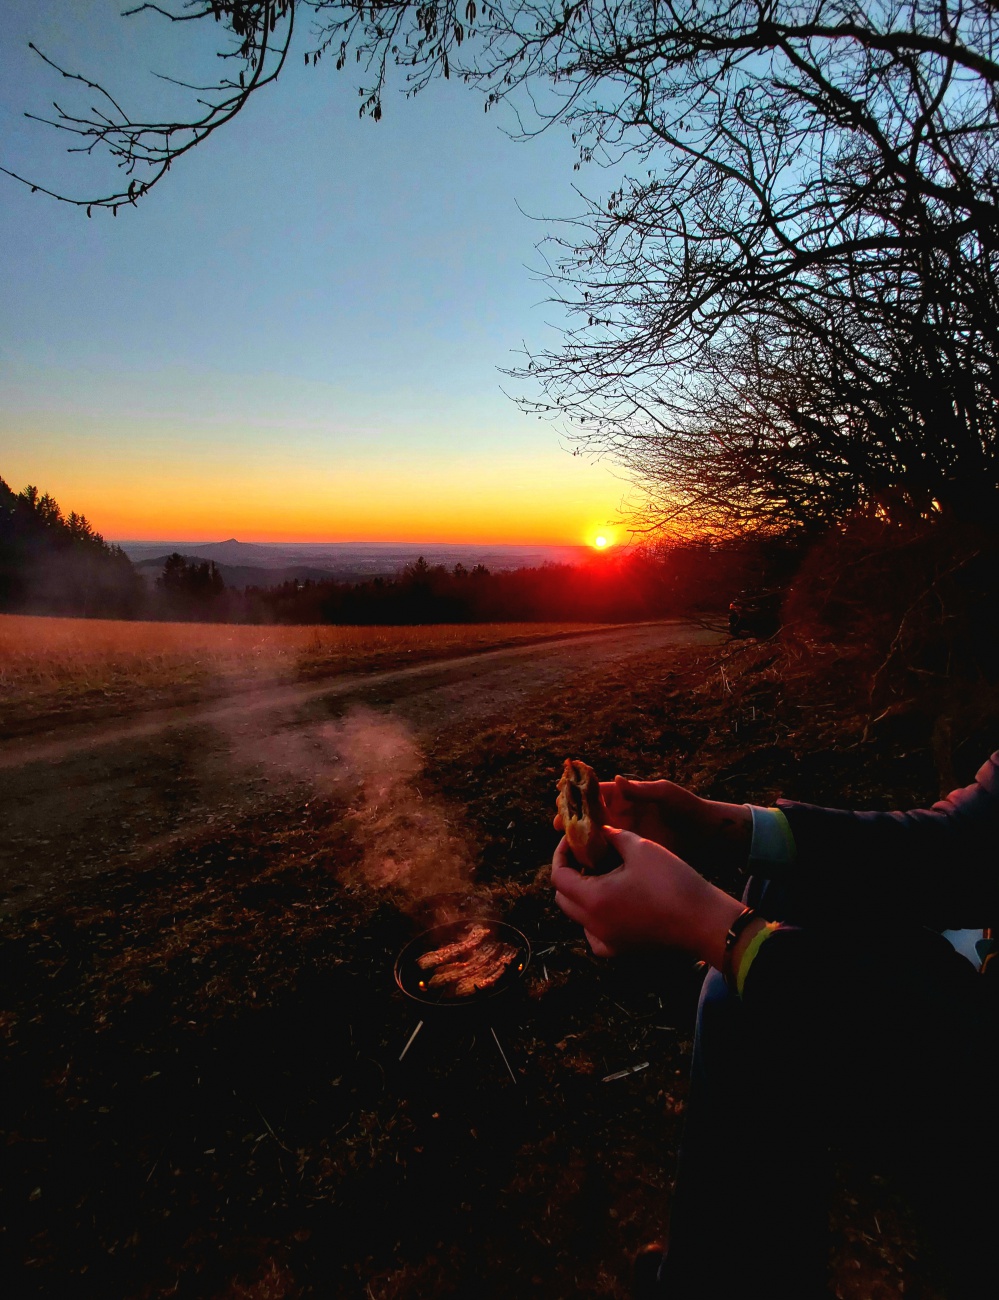 Foto: Martin Zehrer - Grillen bis zum Sonnenuntergang...<br />
Ein wunderschöner Tag geht für uns genussvoll zu Ende :-)<br />
<br />
<br />
<br />
 